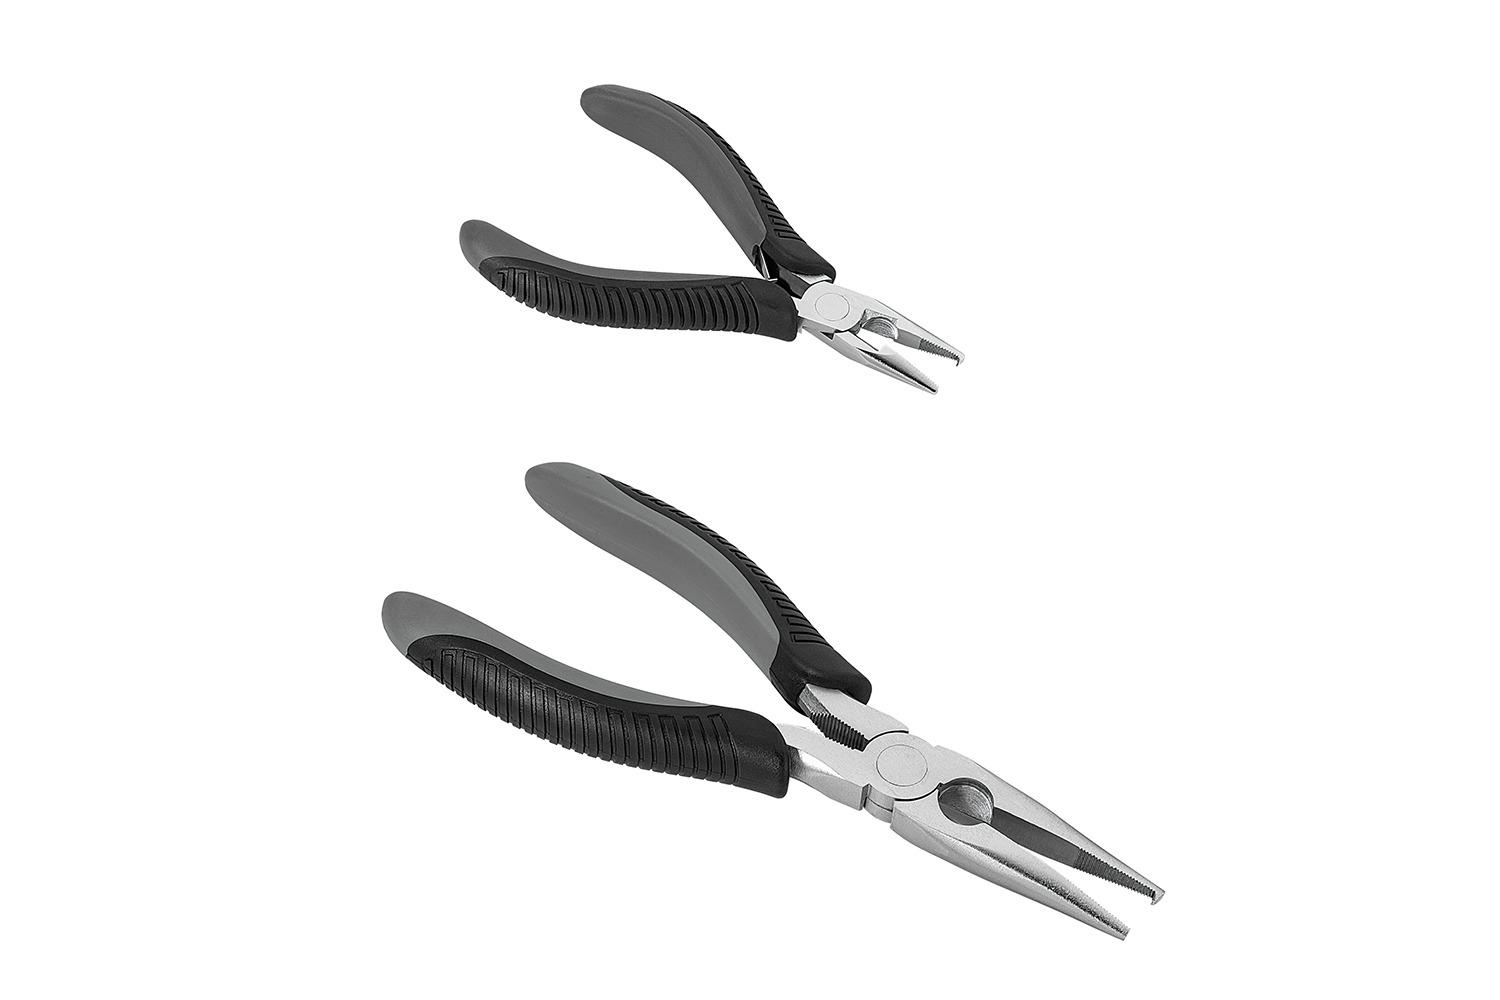 <p><b>Daiwaâs new Split-Ring Pliers</b></p>
<p>Do-it-yourself (DIY) is one of the hottest trends in fishing. From constructing your spinnerbaits â choosing colors, sizes, hooks and weight â to pouring and painting custom jigs. Hooks get bent out of shape. And, of course, hooks rust. Satisfying the need for top-shelf tools, Daiwa introduces its new Split-Ring Pliers series. Available in 5- and 8-inch lengths, these superior pliers collect the positive properties of design and expert machining in one must-have tool.</p>
<p><a href=